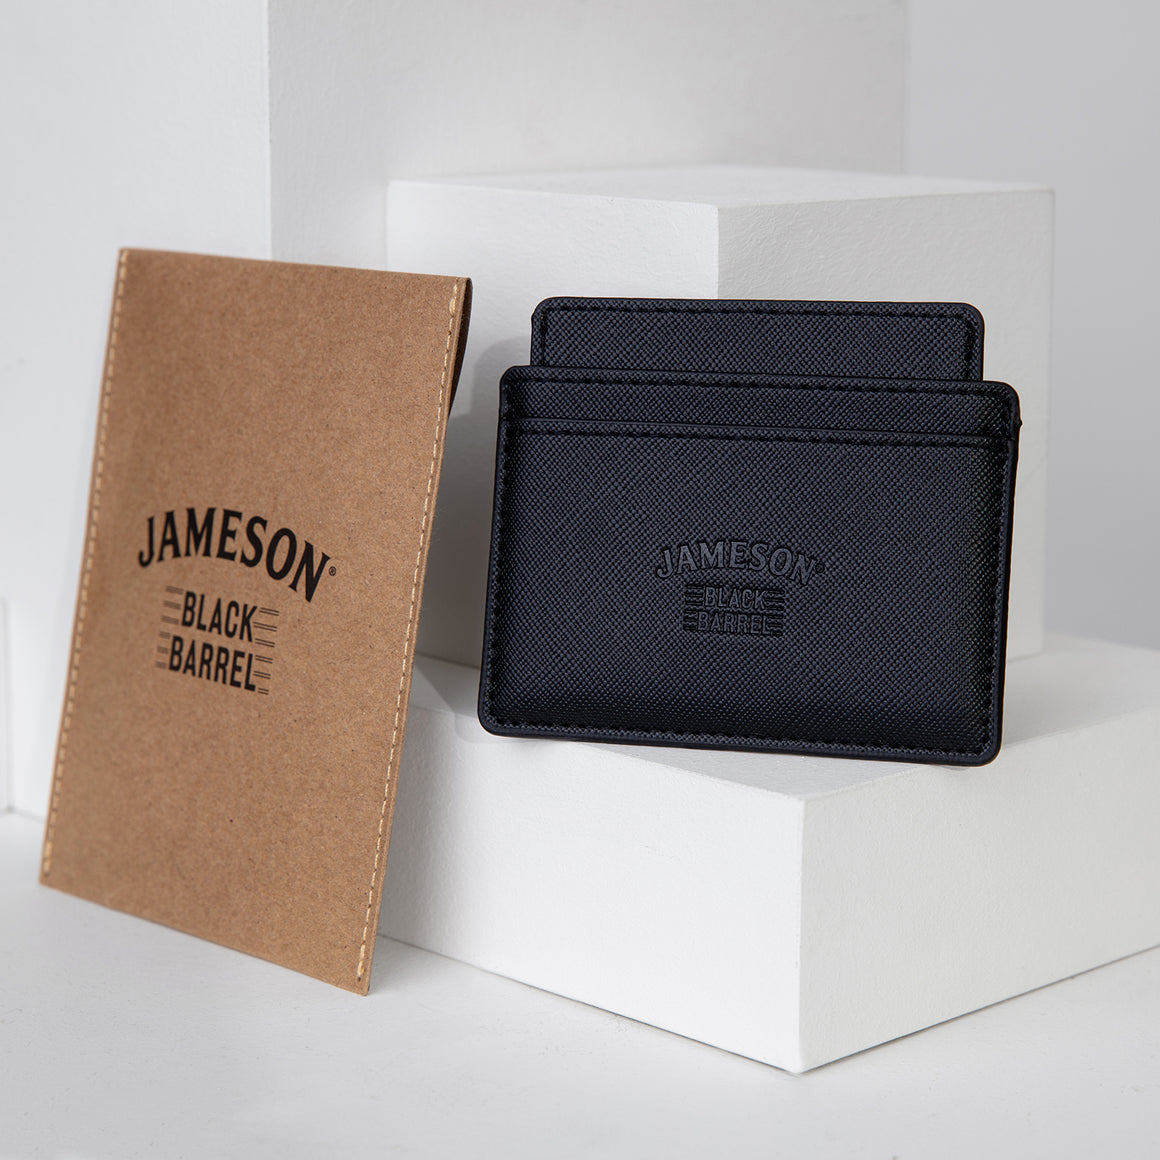 Jameson Black Barrel Card Holder